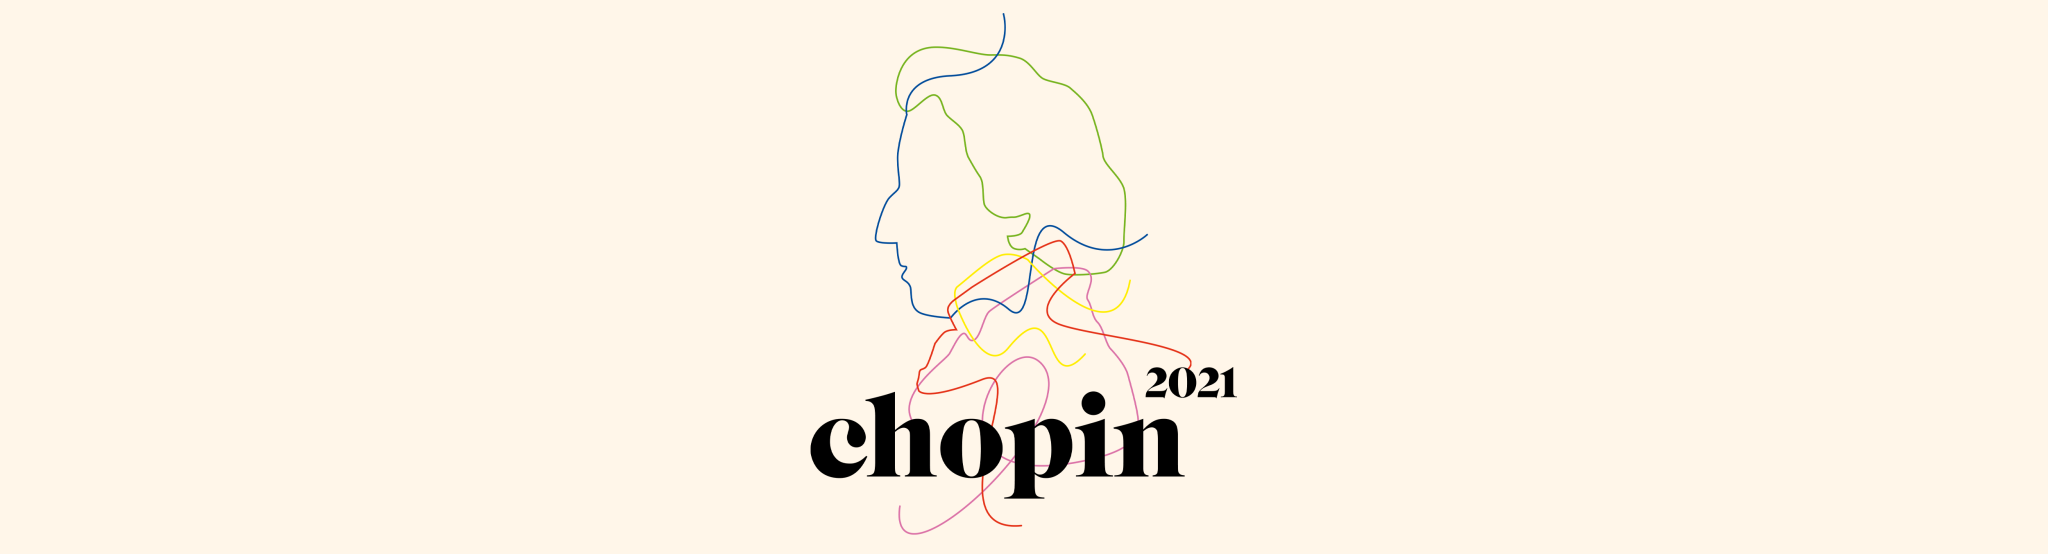 Chopin 2021 - Header V3 - Hi-res